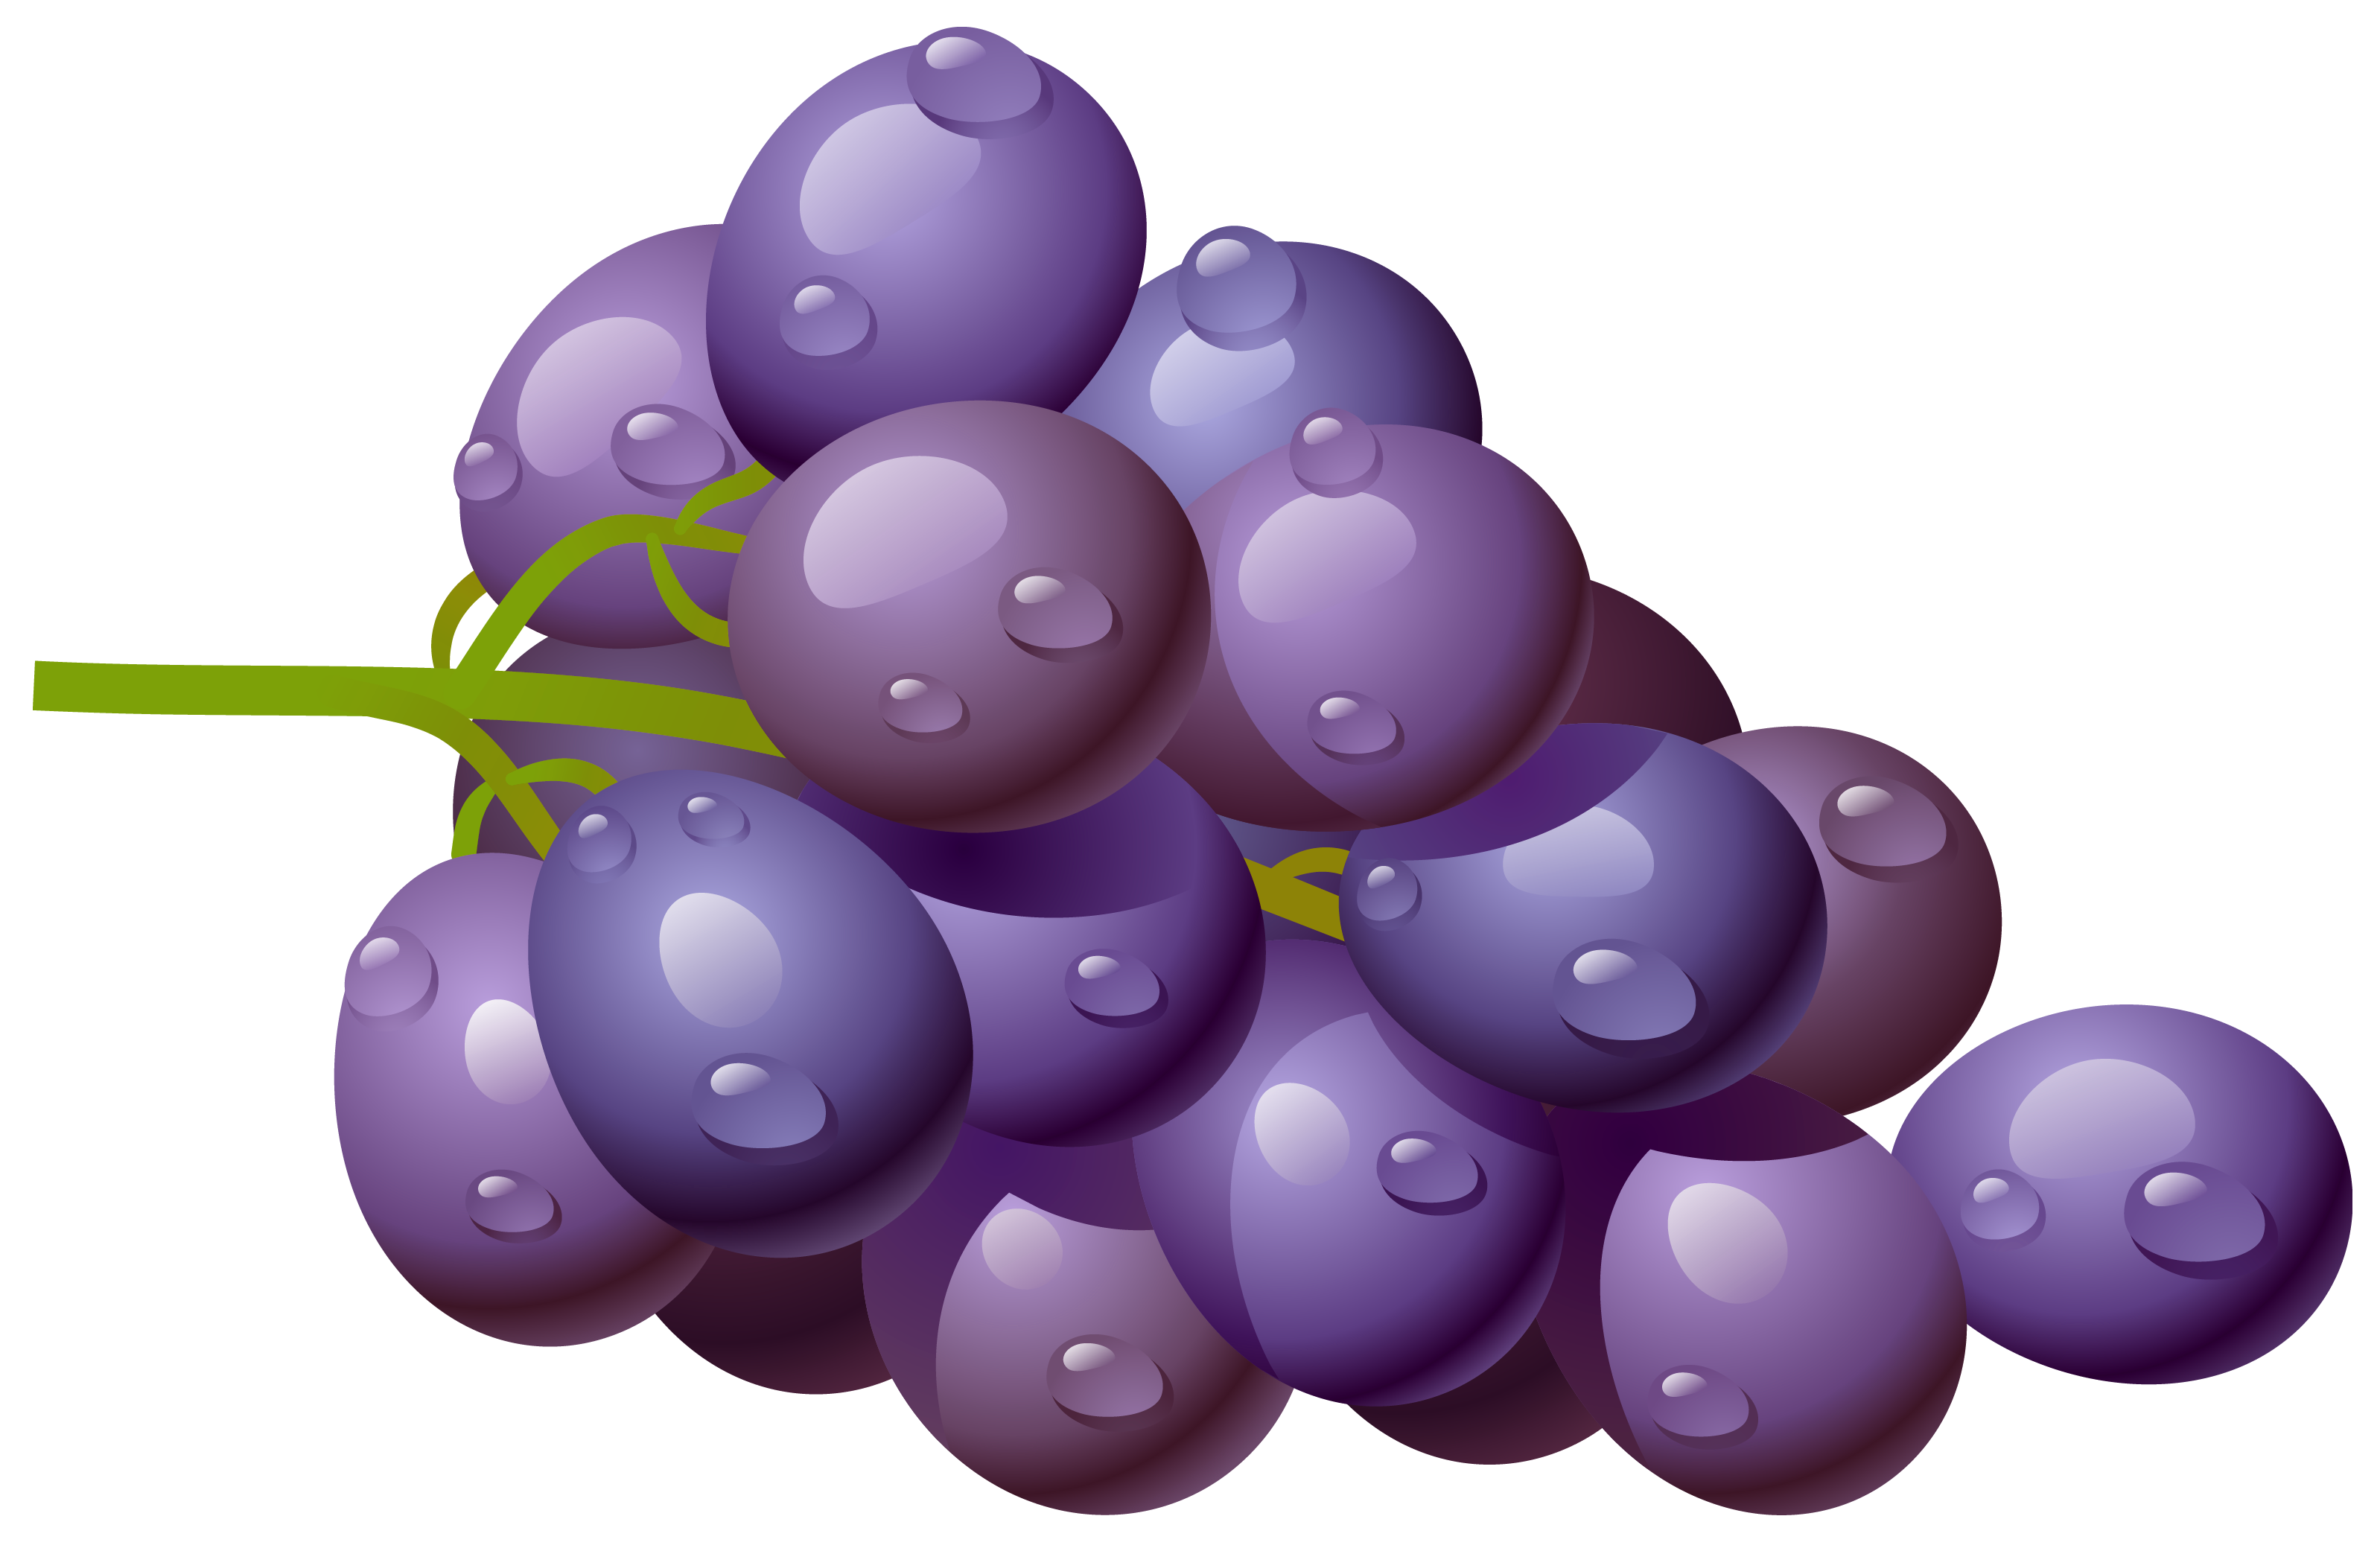 Grapes clip art at vector cli - Grape Clipart